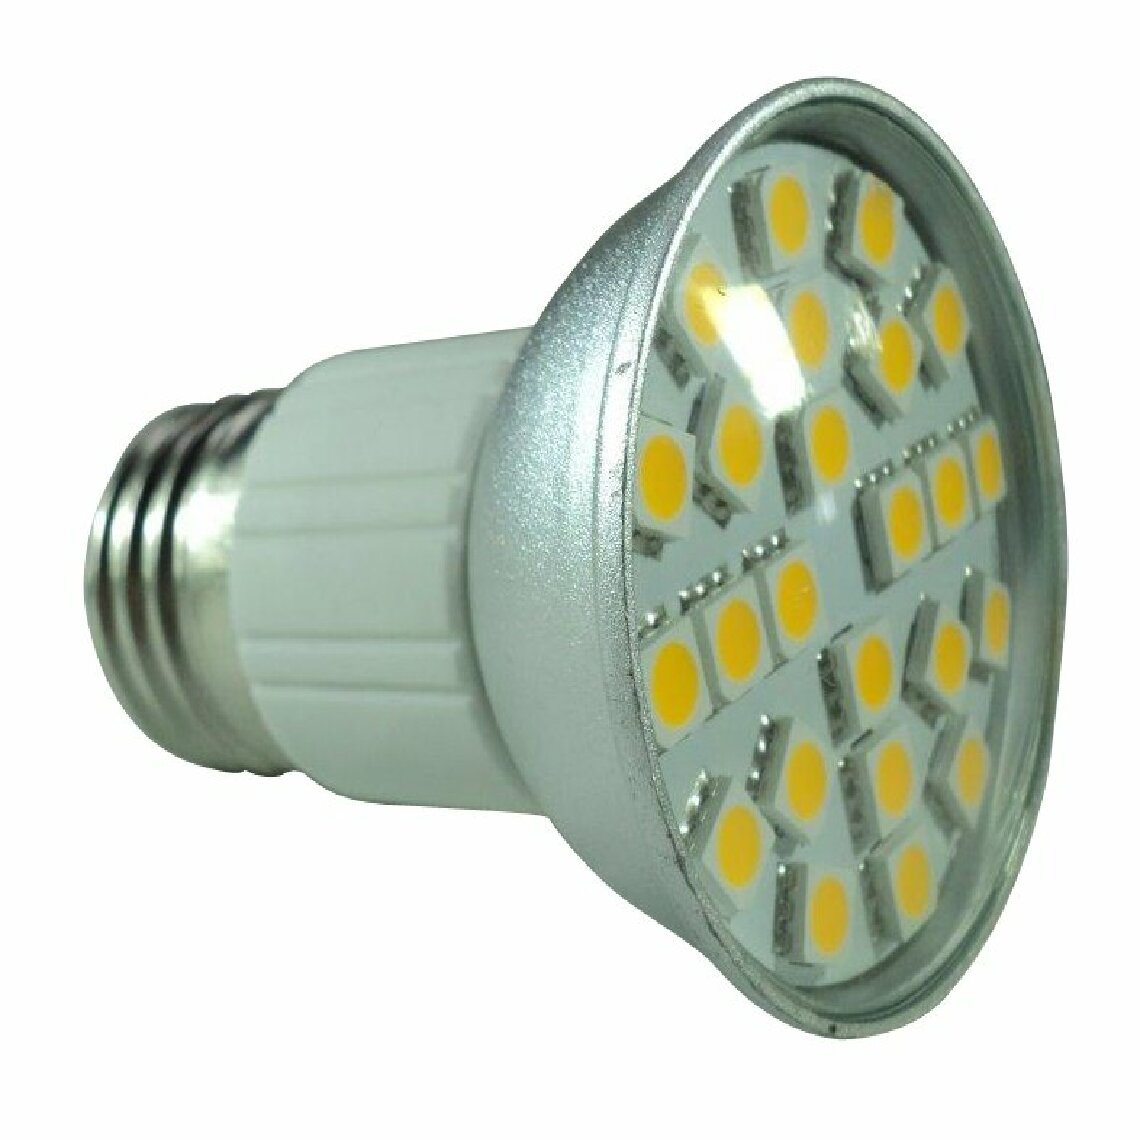 Lampesecoenergie - Lot de 5 Ampoules à 24 leds SMD Blanc Chaud Culot E27, 220-240V- Eclaire Comme 50W - Ampoules LED